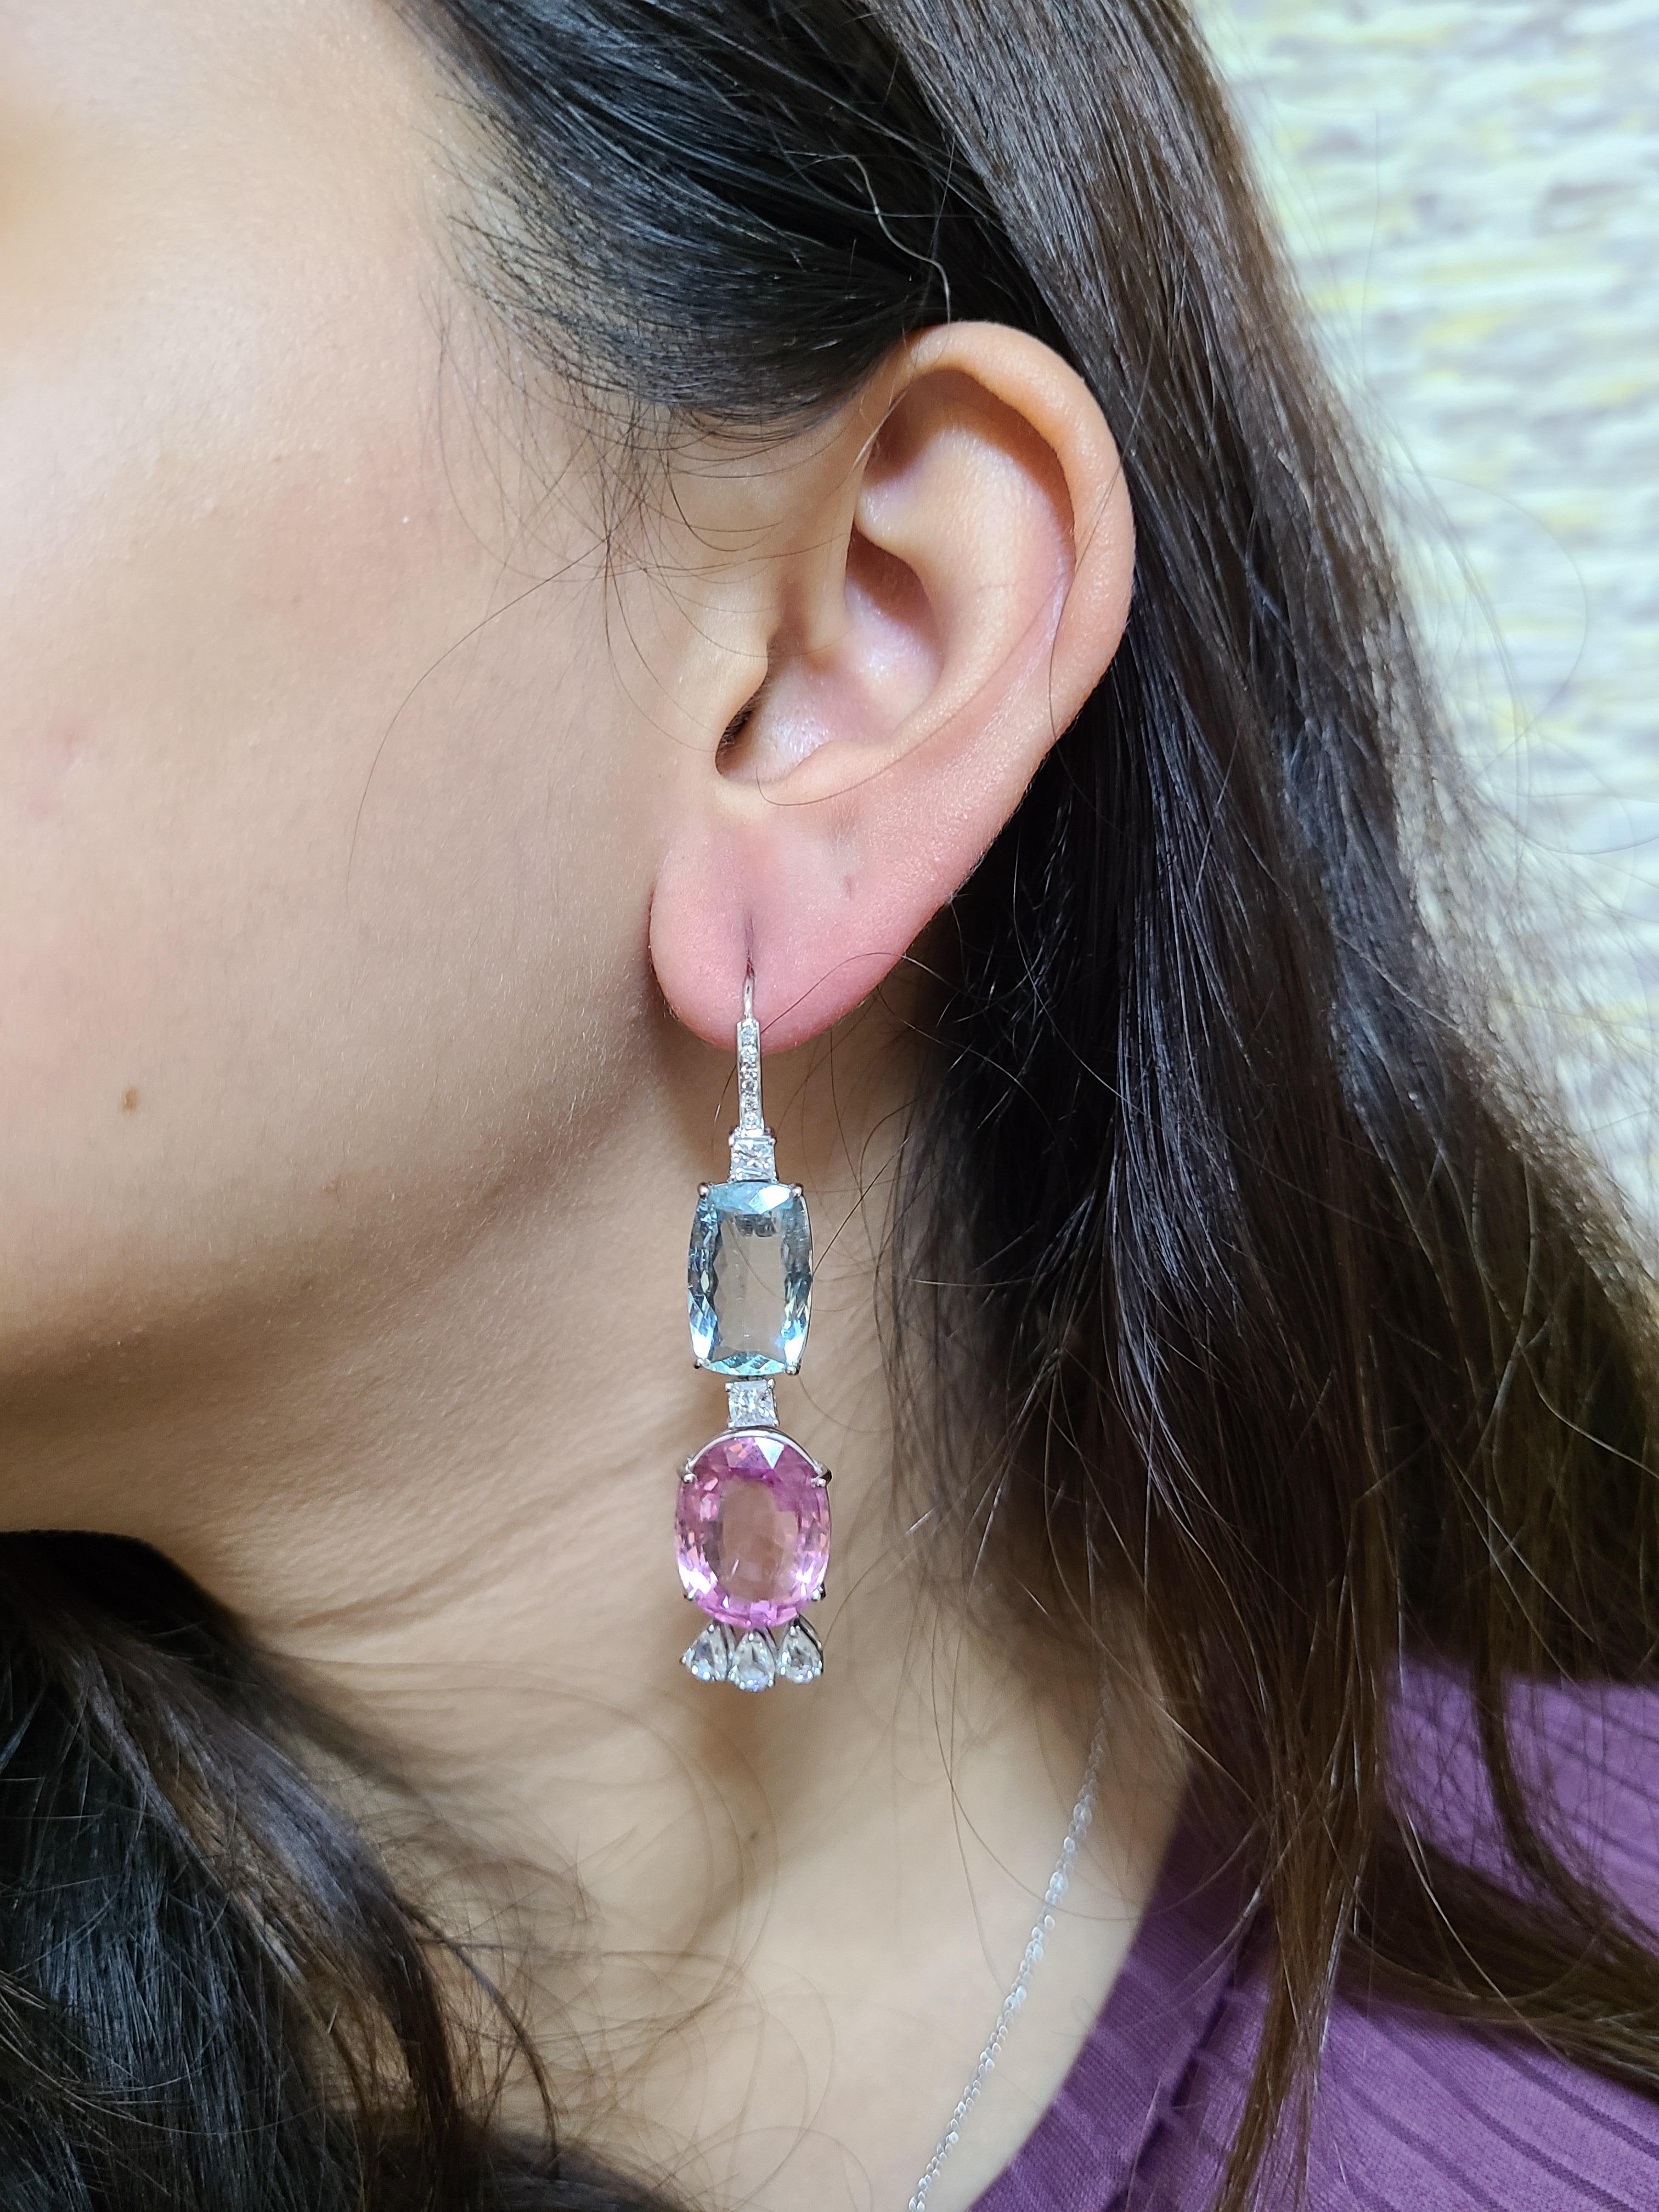 Une paire de boucles d'oreilles très chic en or 18 carats, composées d'aigue-marine, de tourmaline rose et de diamants taille rose. Le poids combiné de l'aigue-marine et de la tourmaline est de 38,25 carats. Les deux pierres sont entièrement